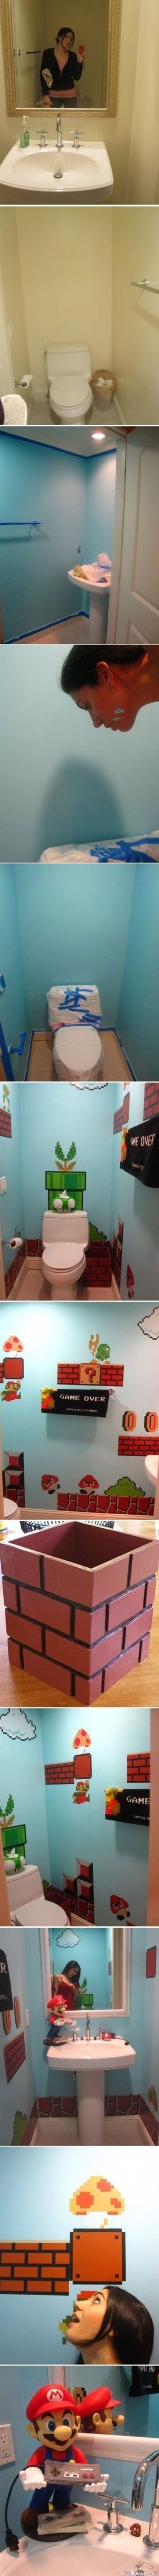 Mario aiheinen vessa